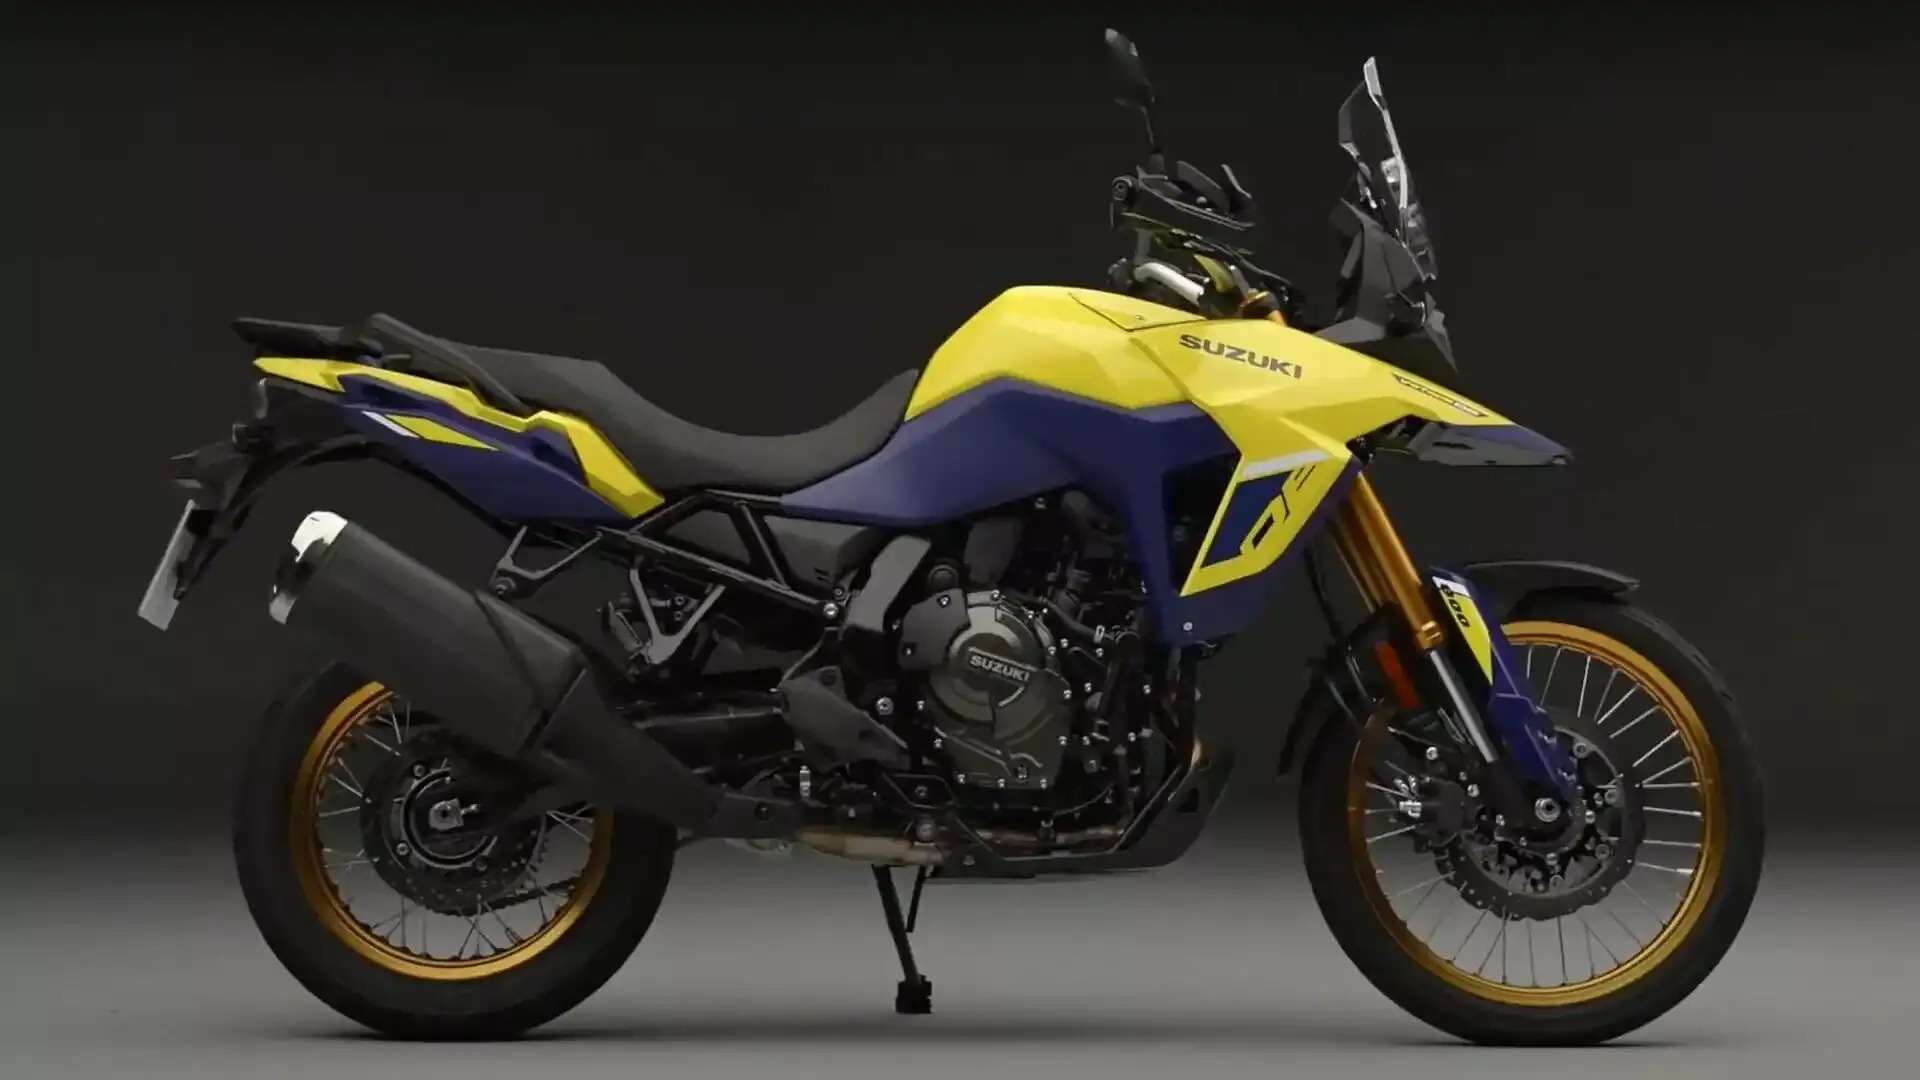 Suzuki V-Strom 800DE: भारत में जल्द लॉन्च होने जा रही महंगी एडवेंचर बाइक